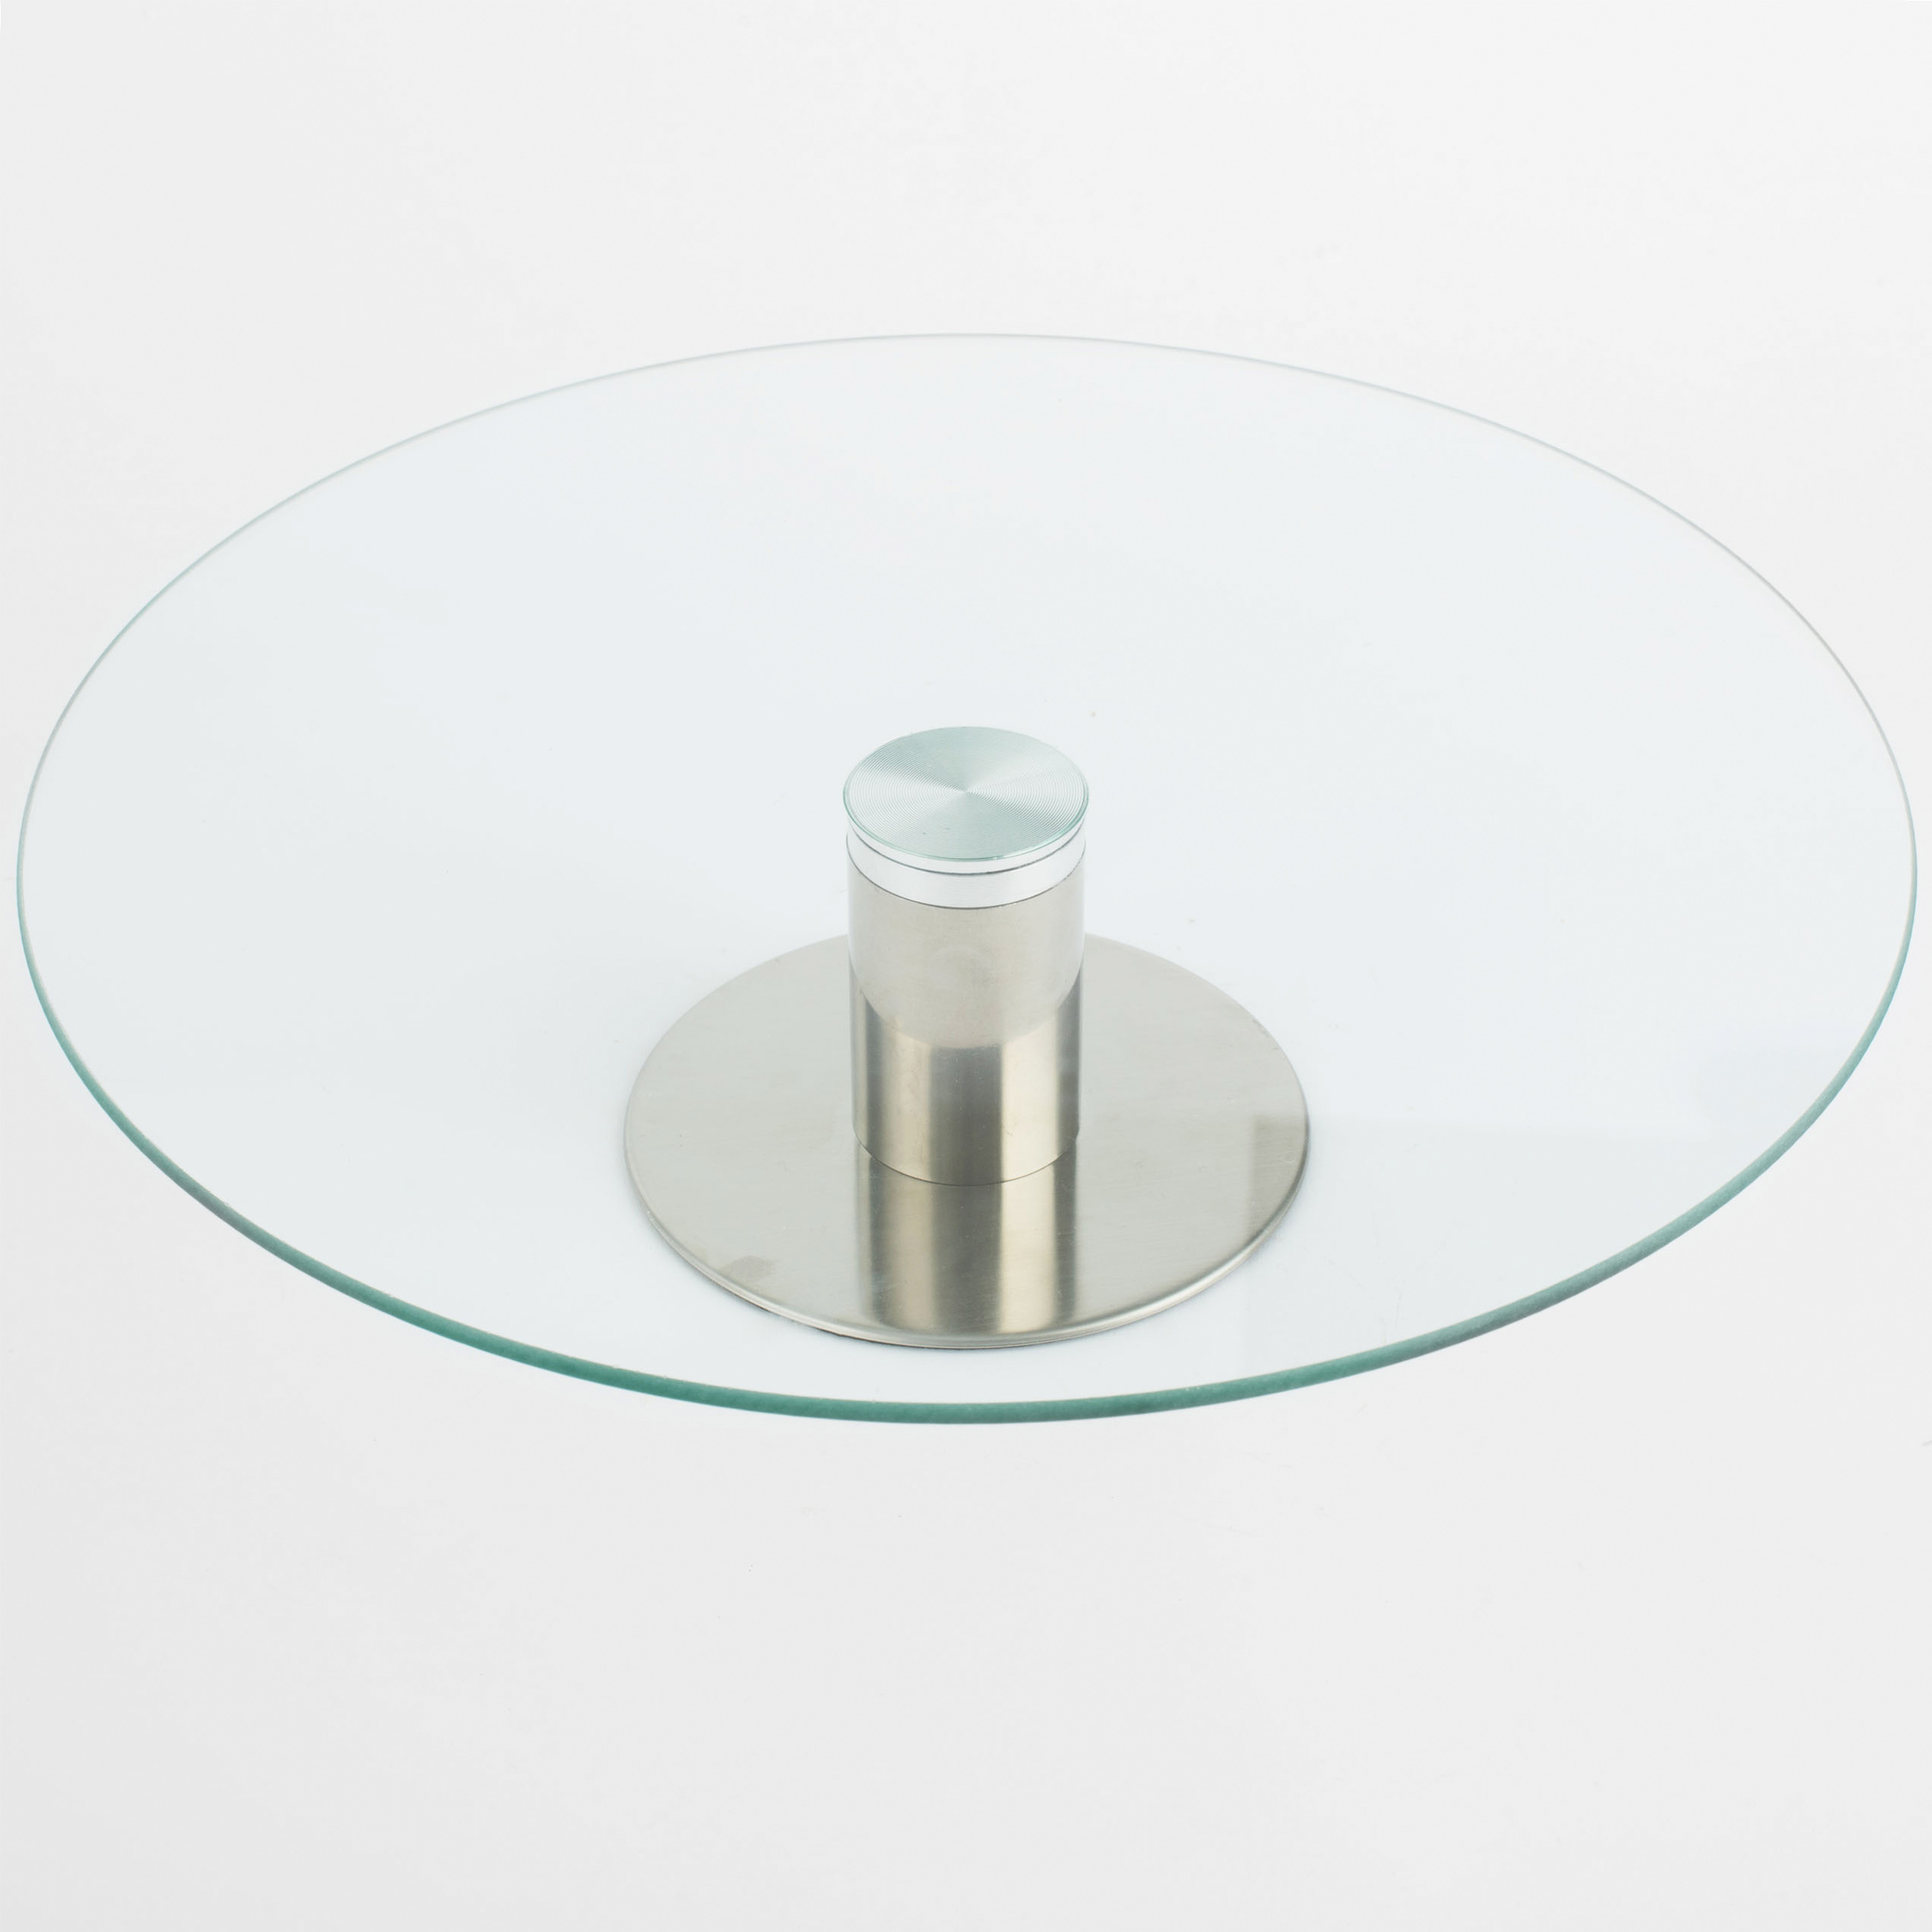 Dish on a leg, 30x7 cm, glass / steel, Classic изображение № 3